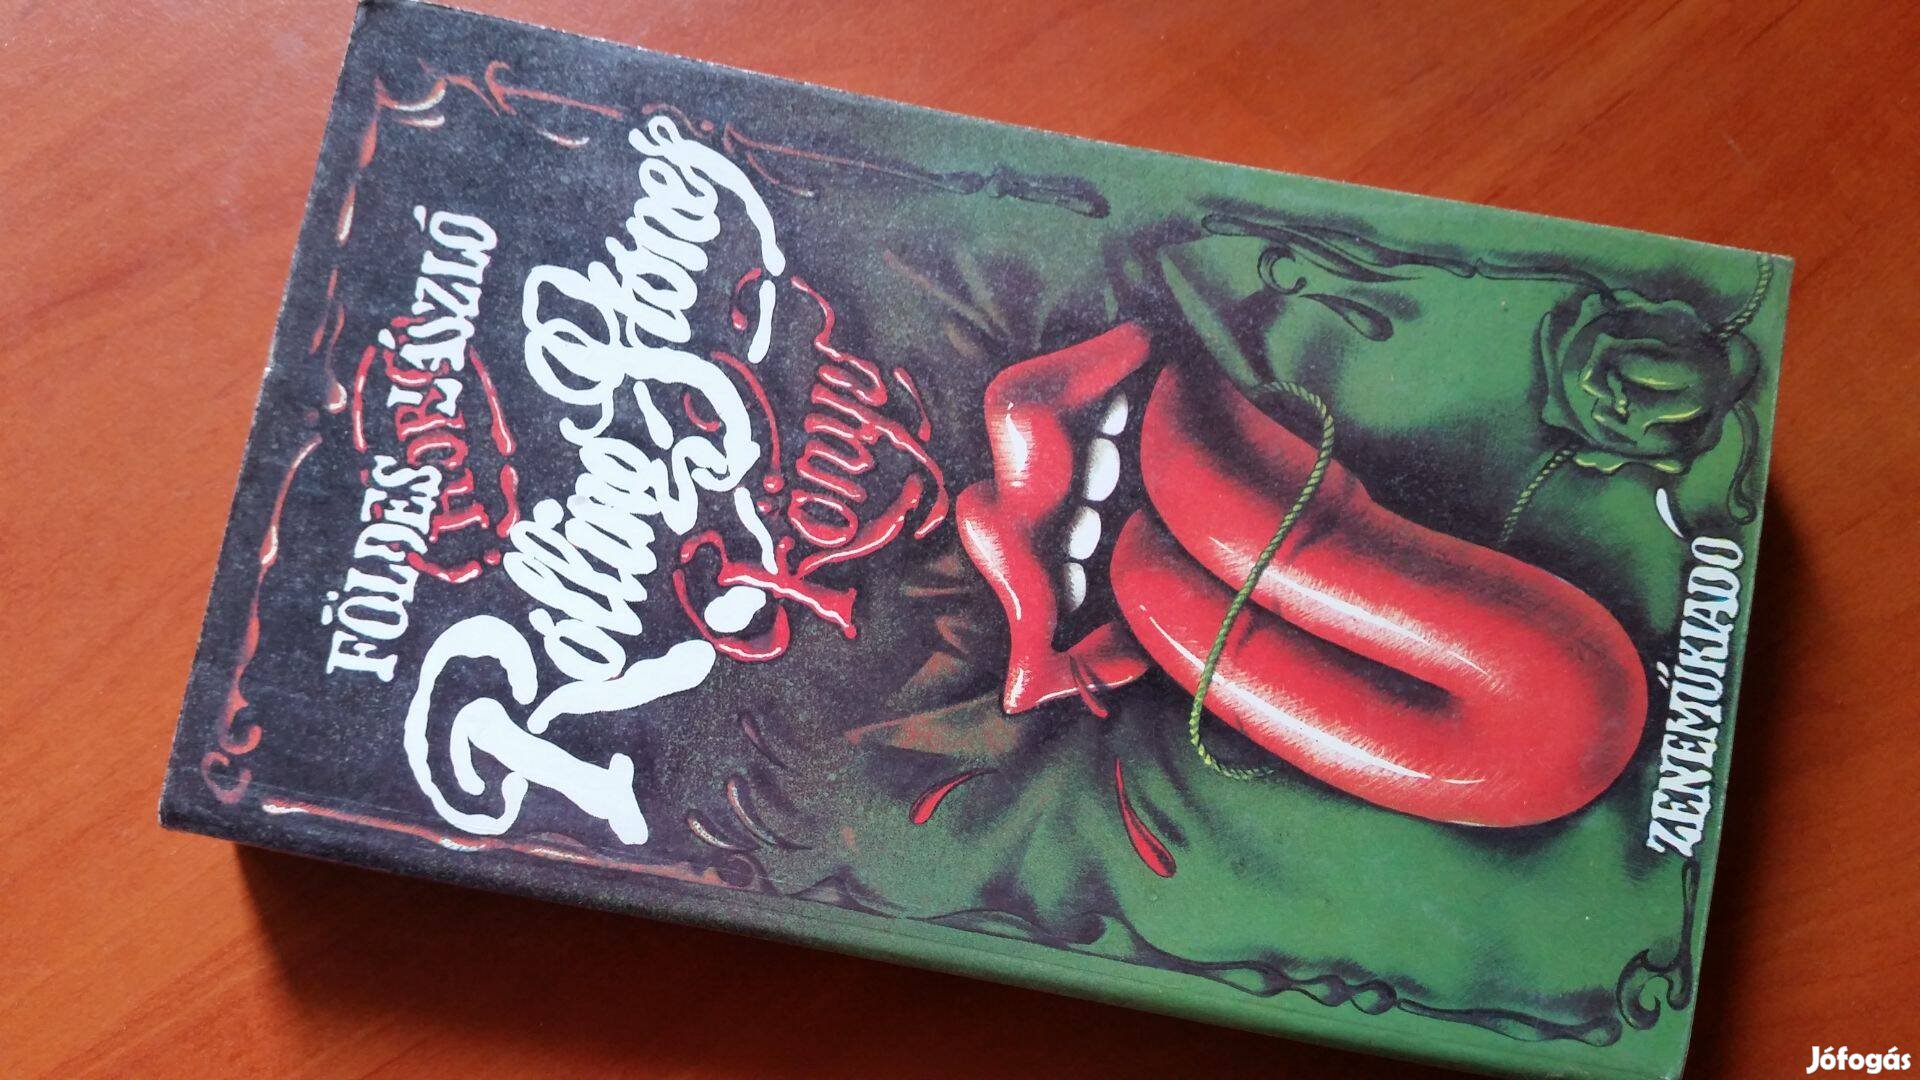 Földes László Hobo: Rolling Stones könyv